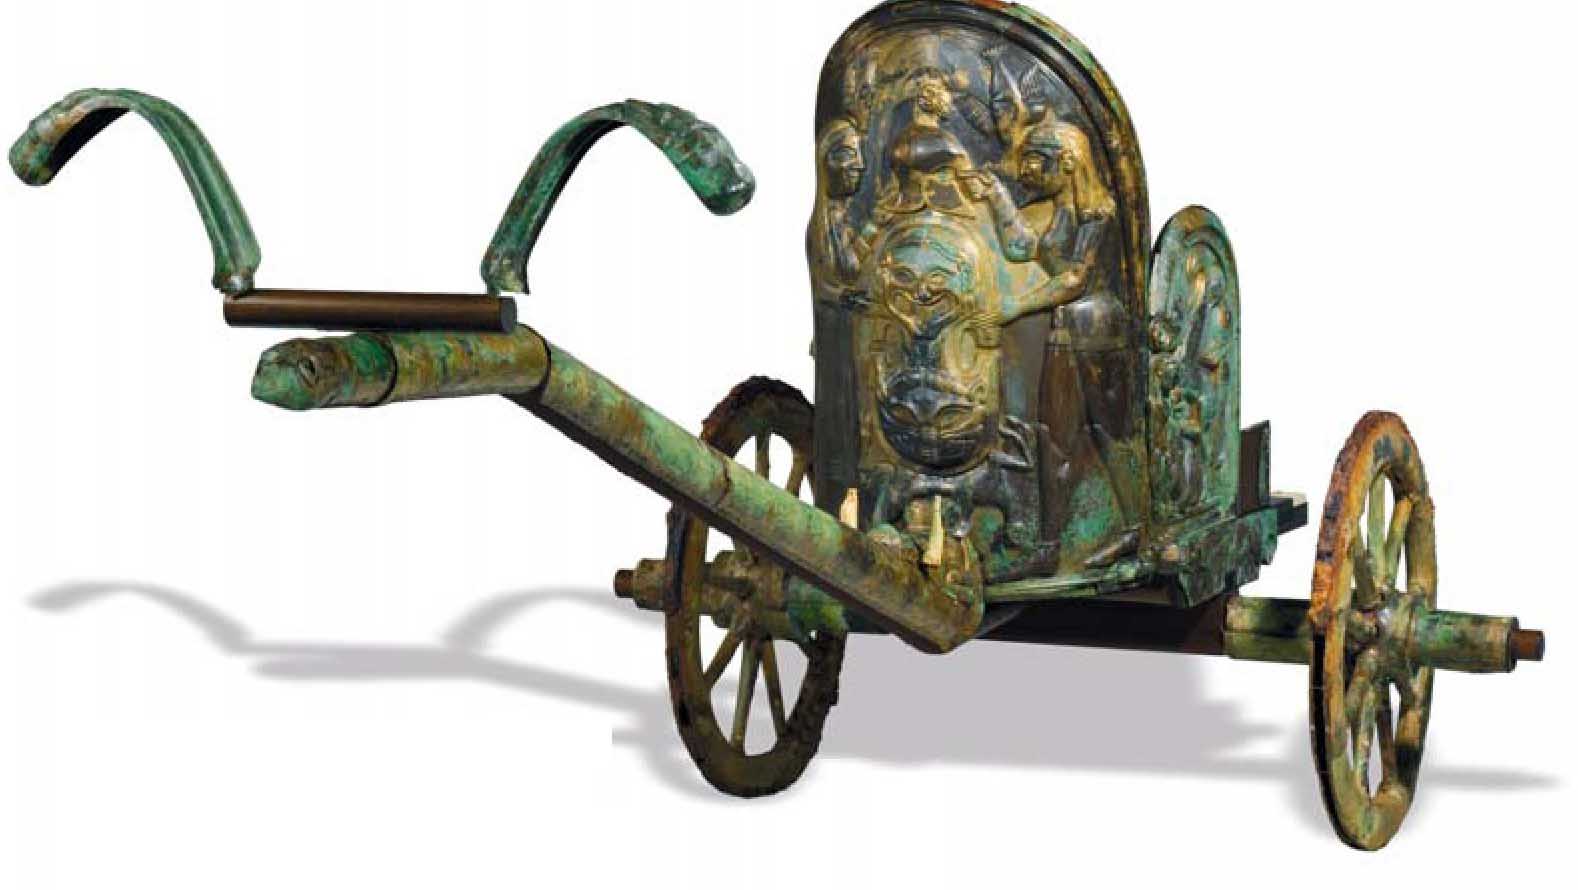 Этрусская бронзовая колесница, инкрустированная слоновой костью. Вторая четверть VI века до нашей эры. Музей Метрополитен, Нью-Йорк (США).